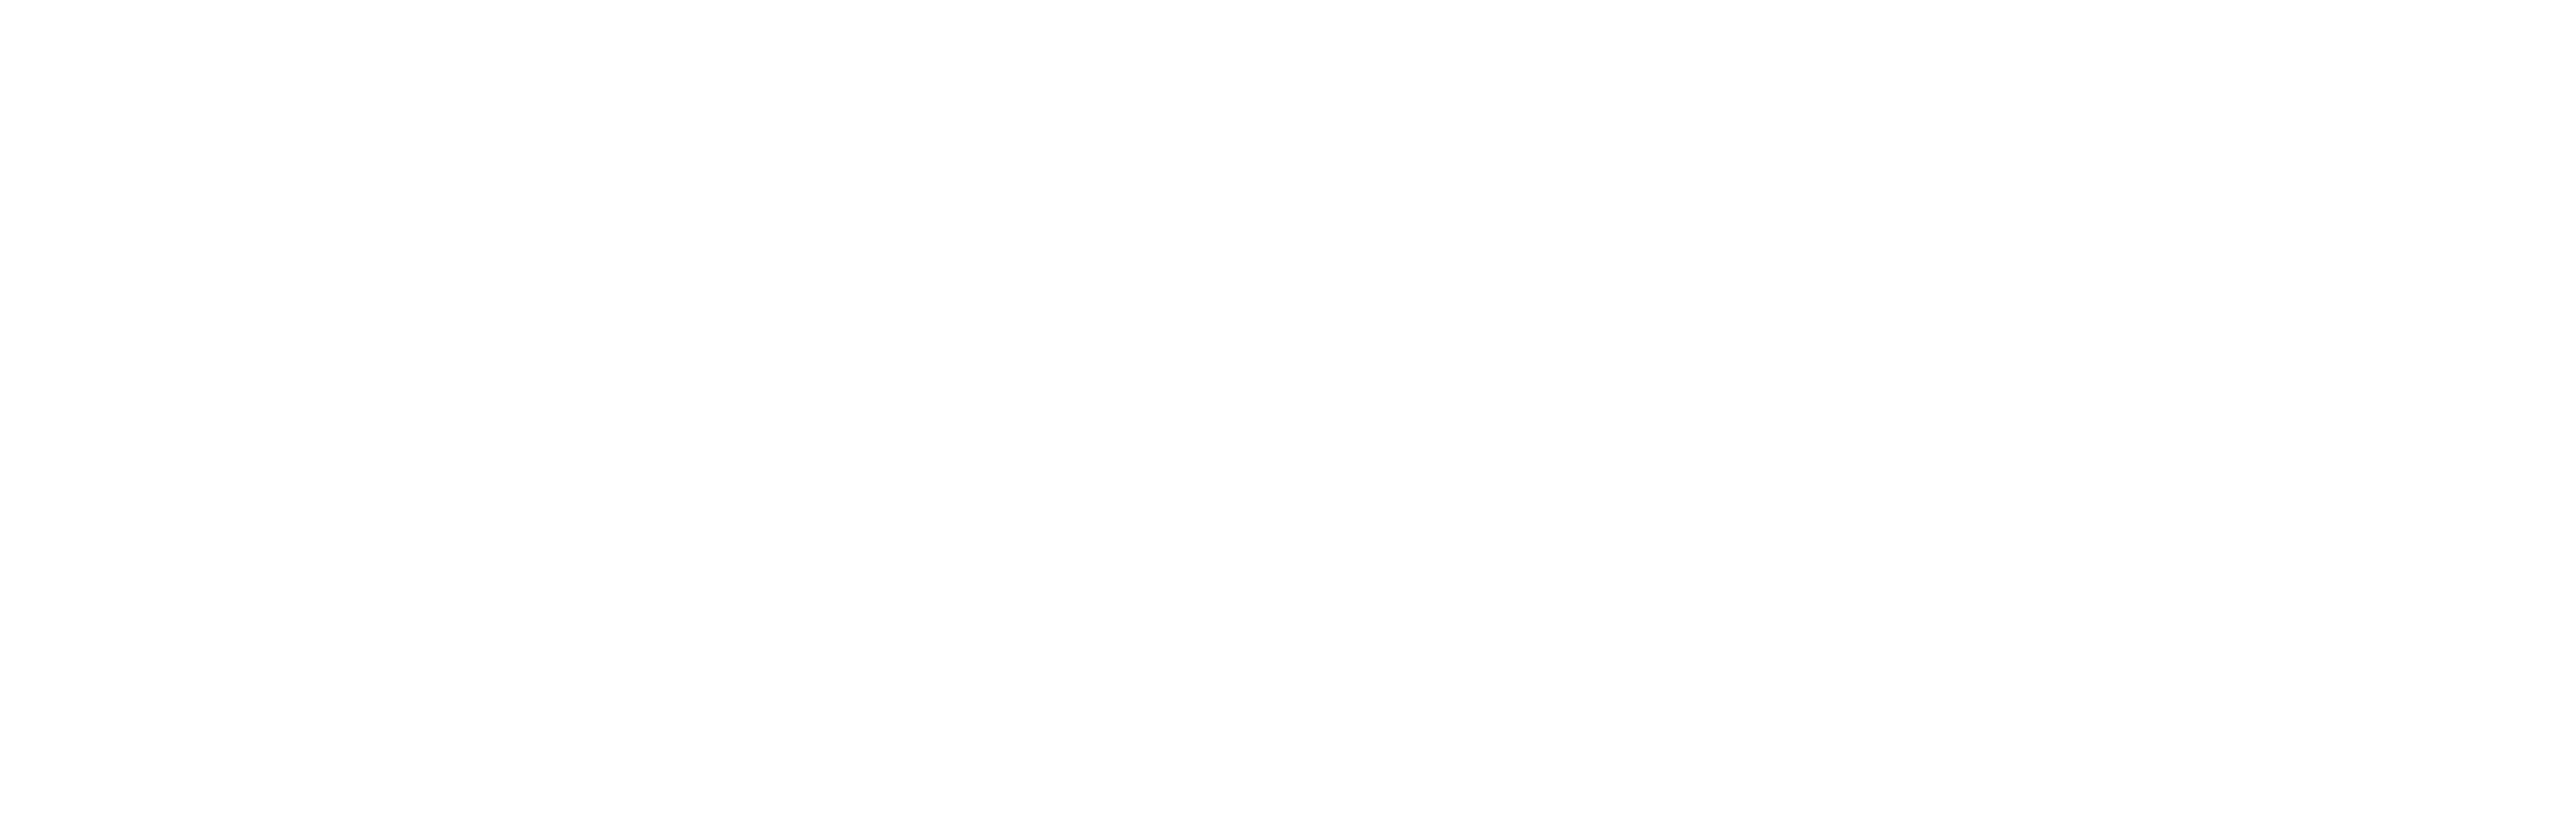 Membre de la Chambre de commerce du Montréal métropolitain